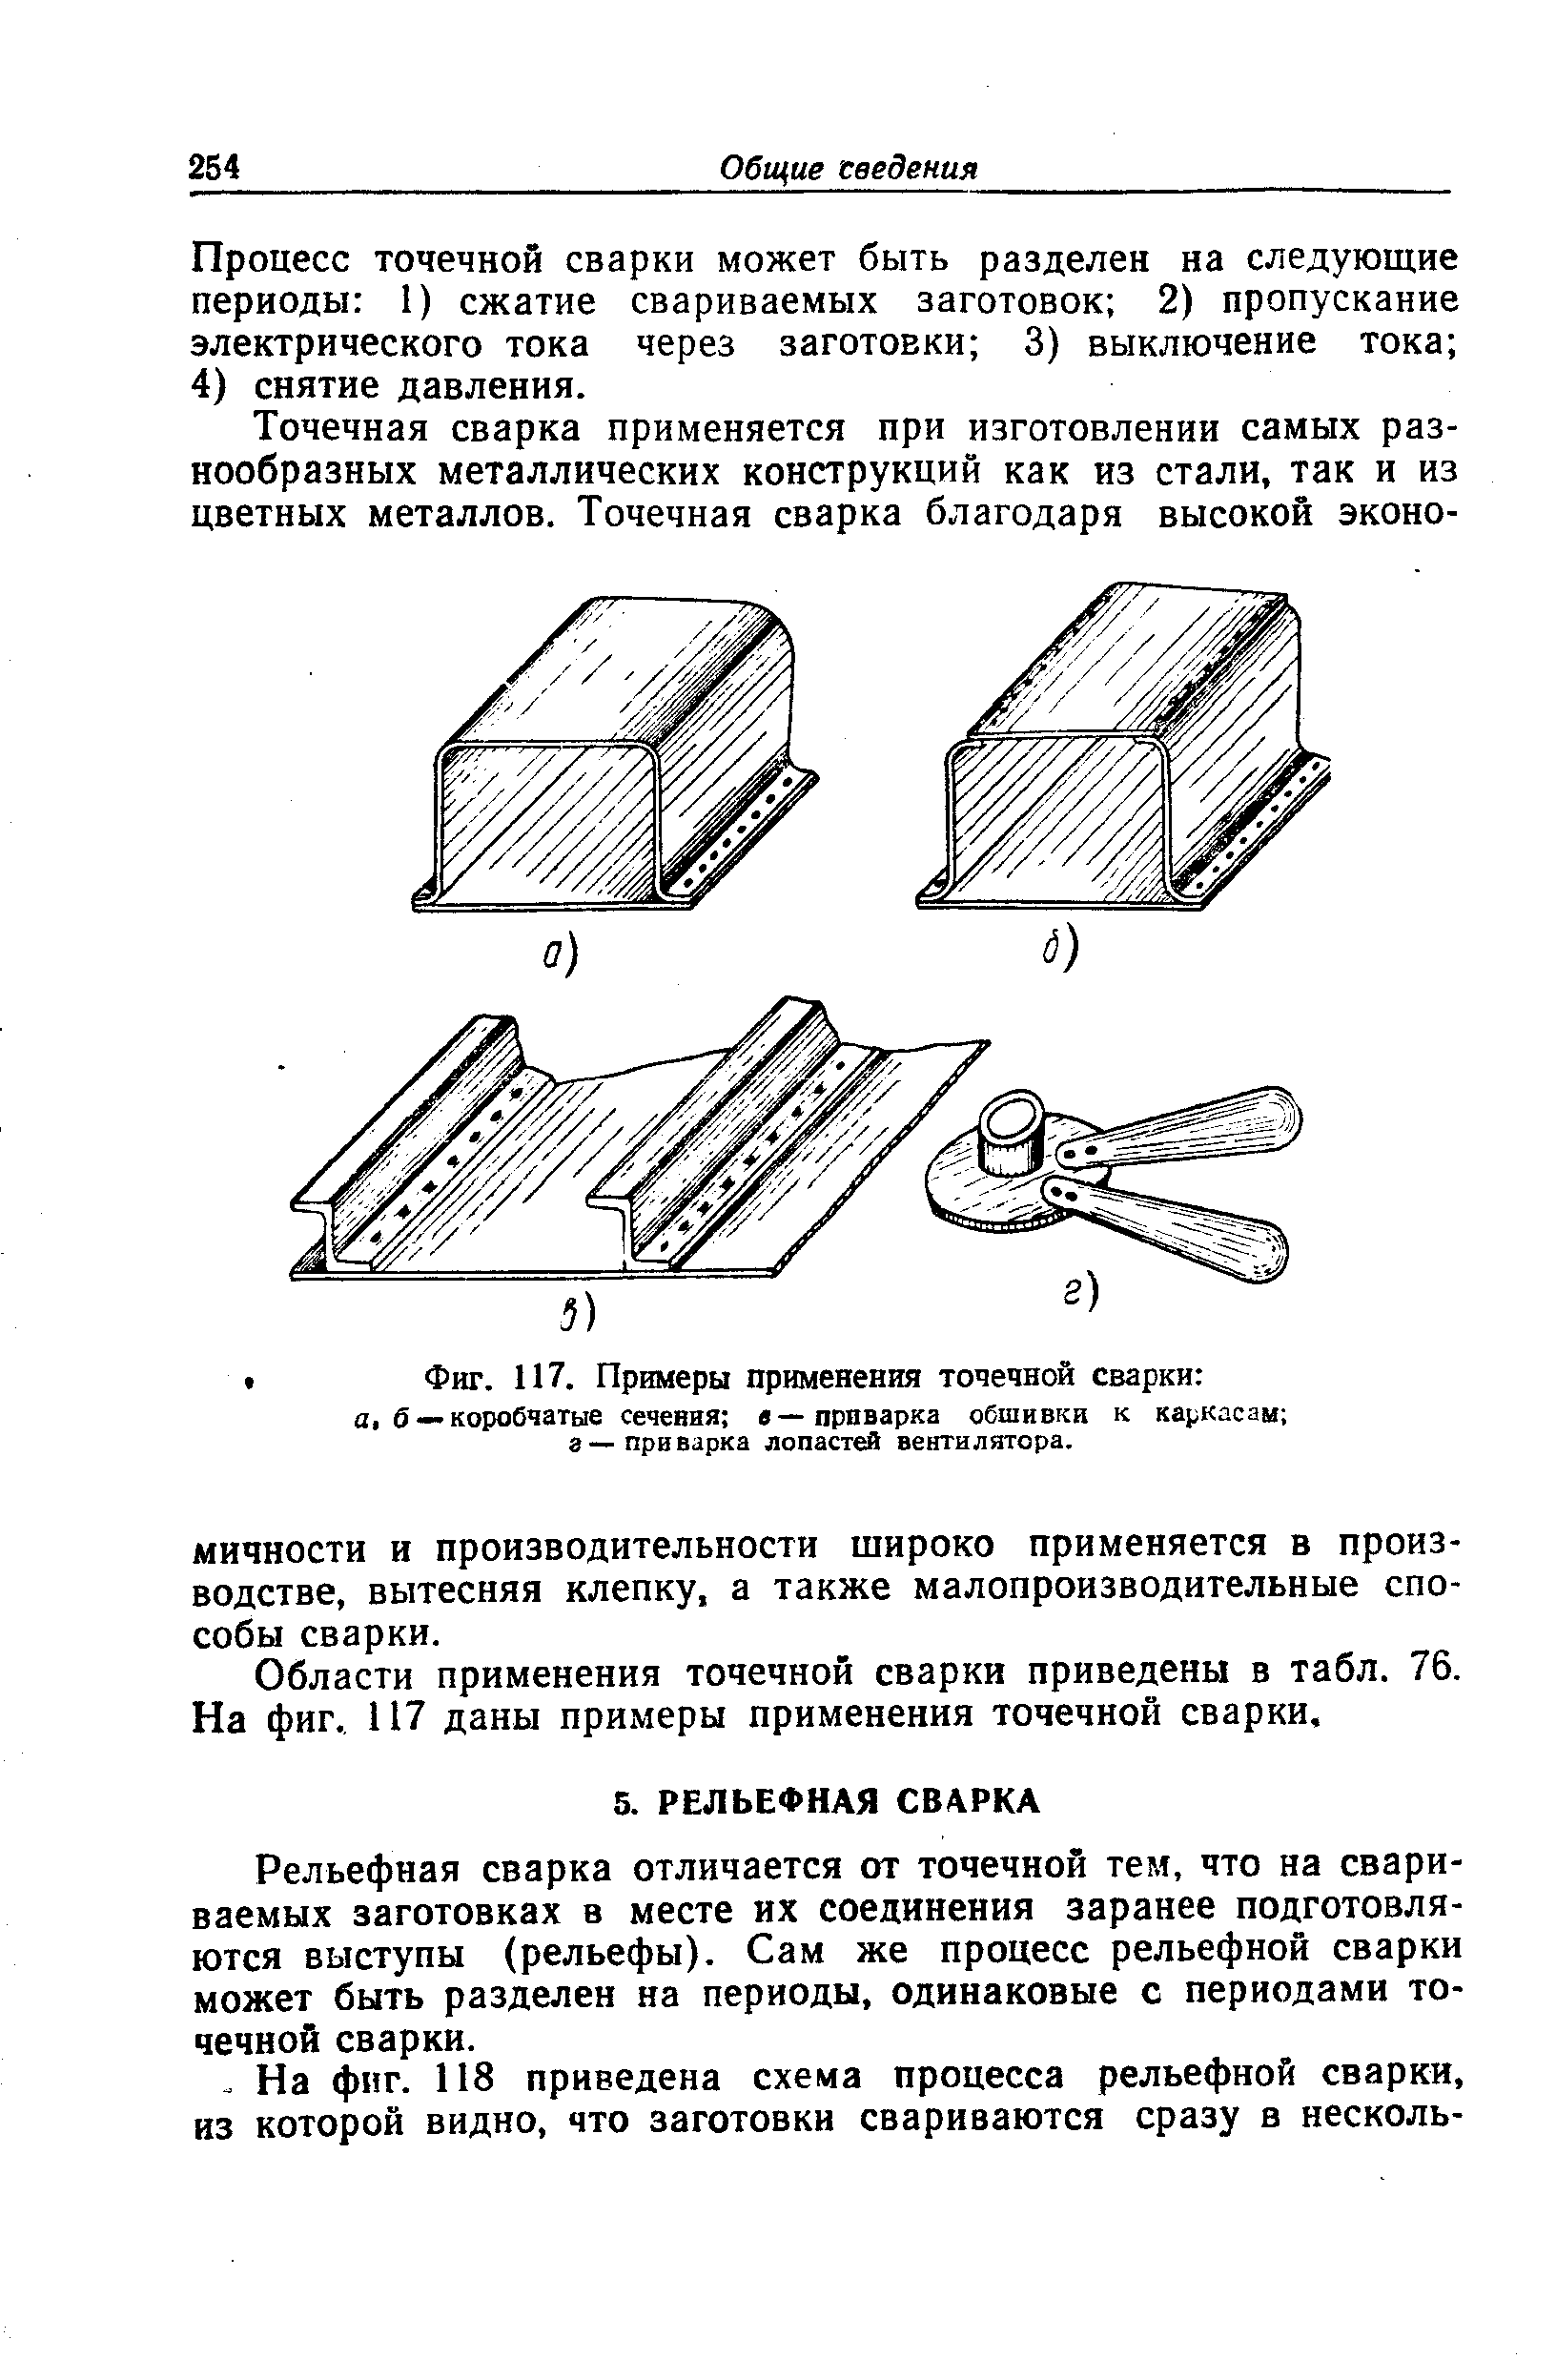 Фиг. 117. Примеры применения точечной сварки а, б — коробчатые сечения в—проварка обшивки к каркасам а—приварка лопастей вентилятора.
